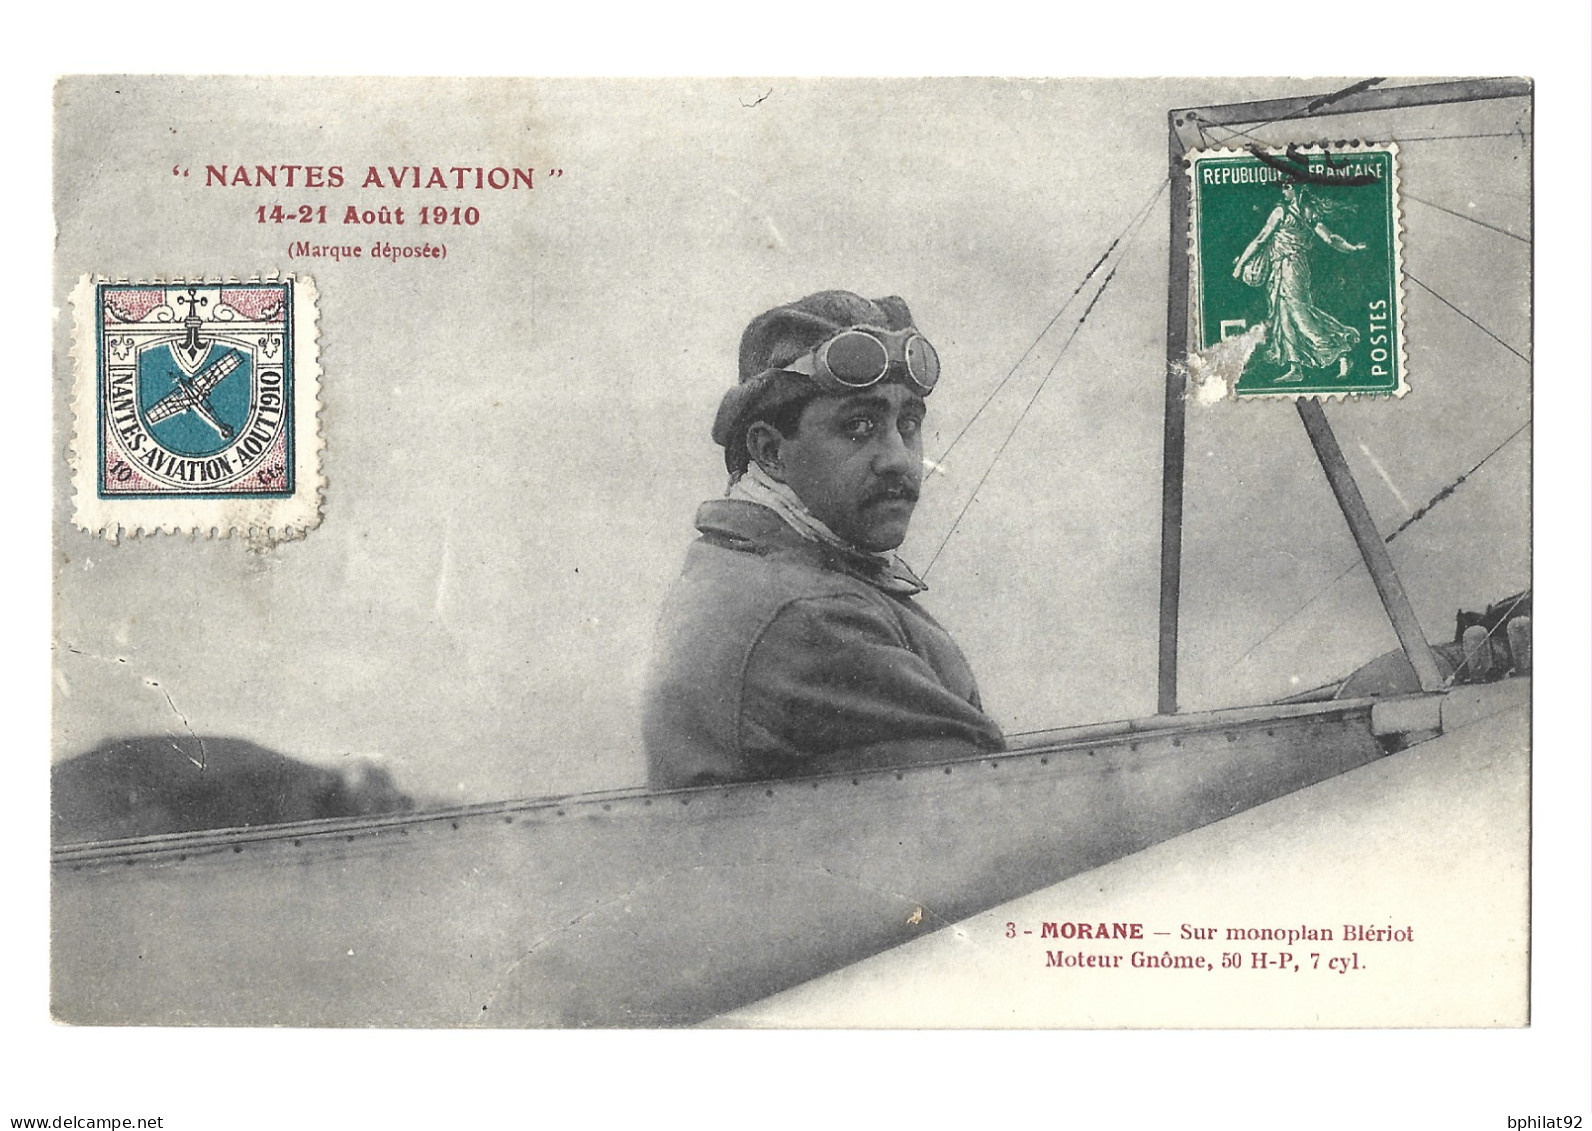 !!! CARTE POSTALE AVEC VIGNETTE DES FÊTES D'AVIATION DE NANTES, AOÛT 1910, PETITS DÉFAUTS - Aviazione